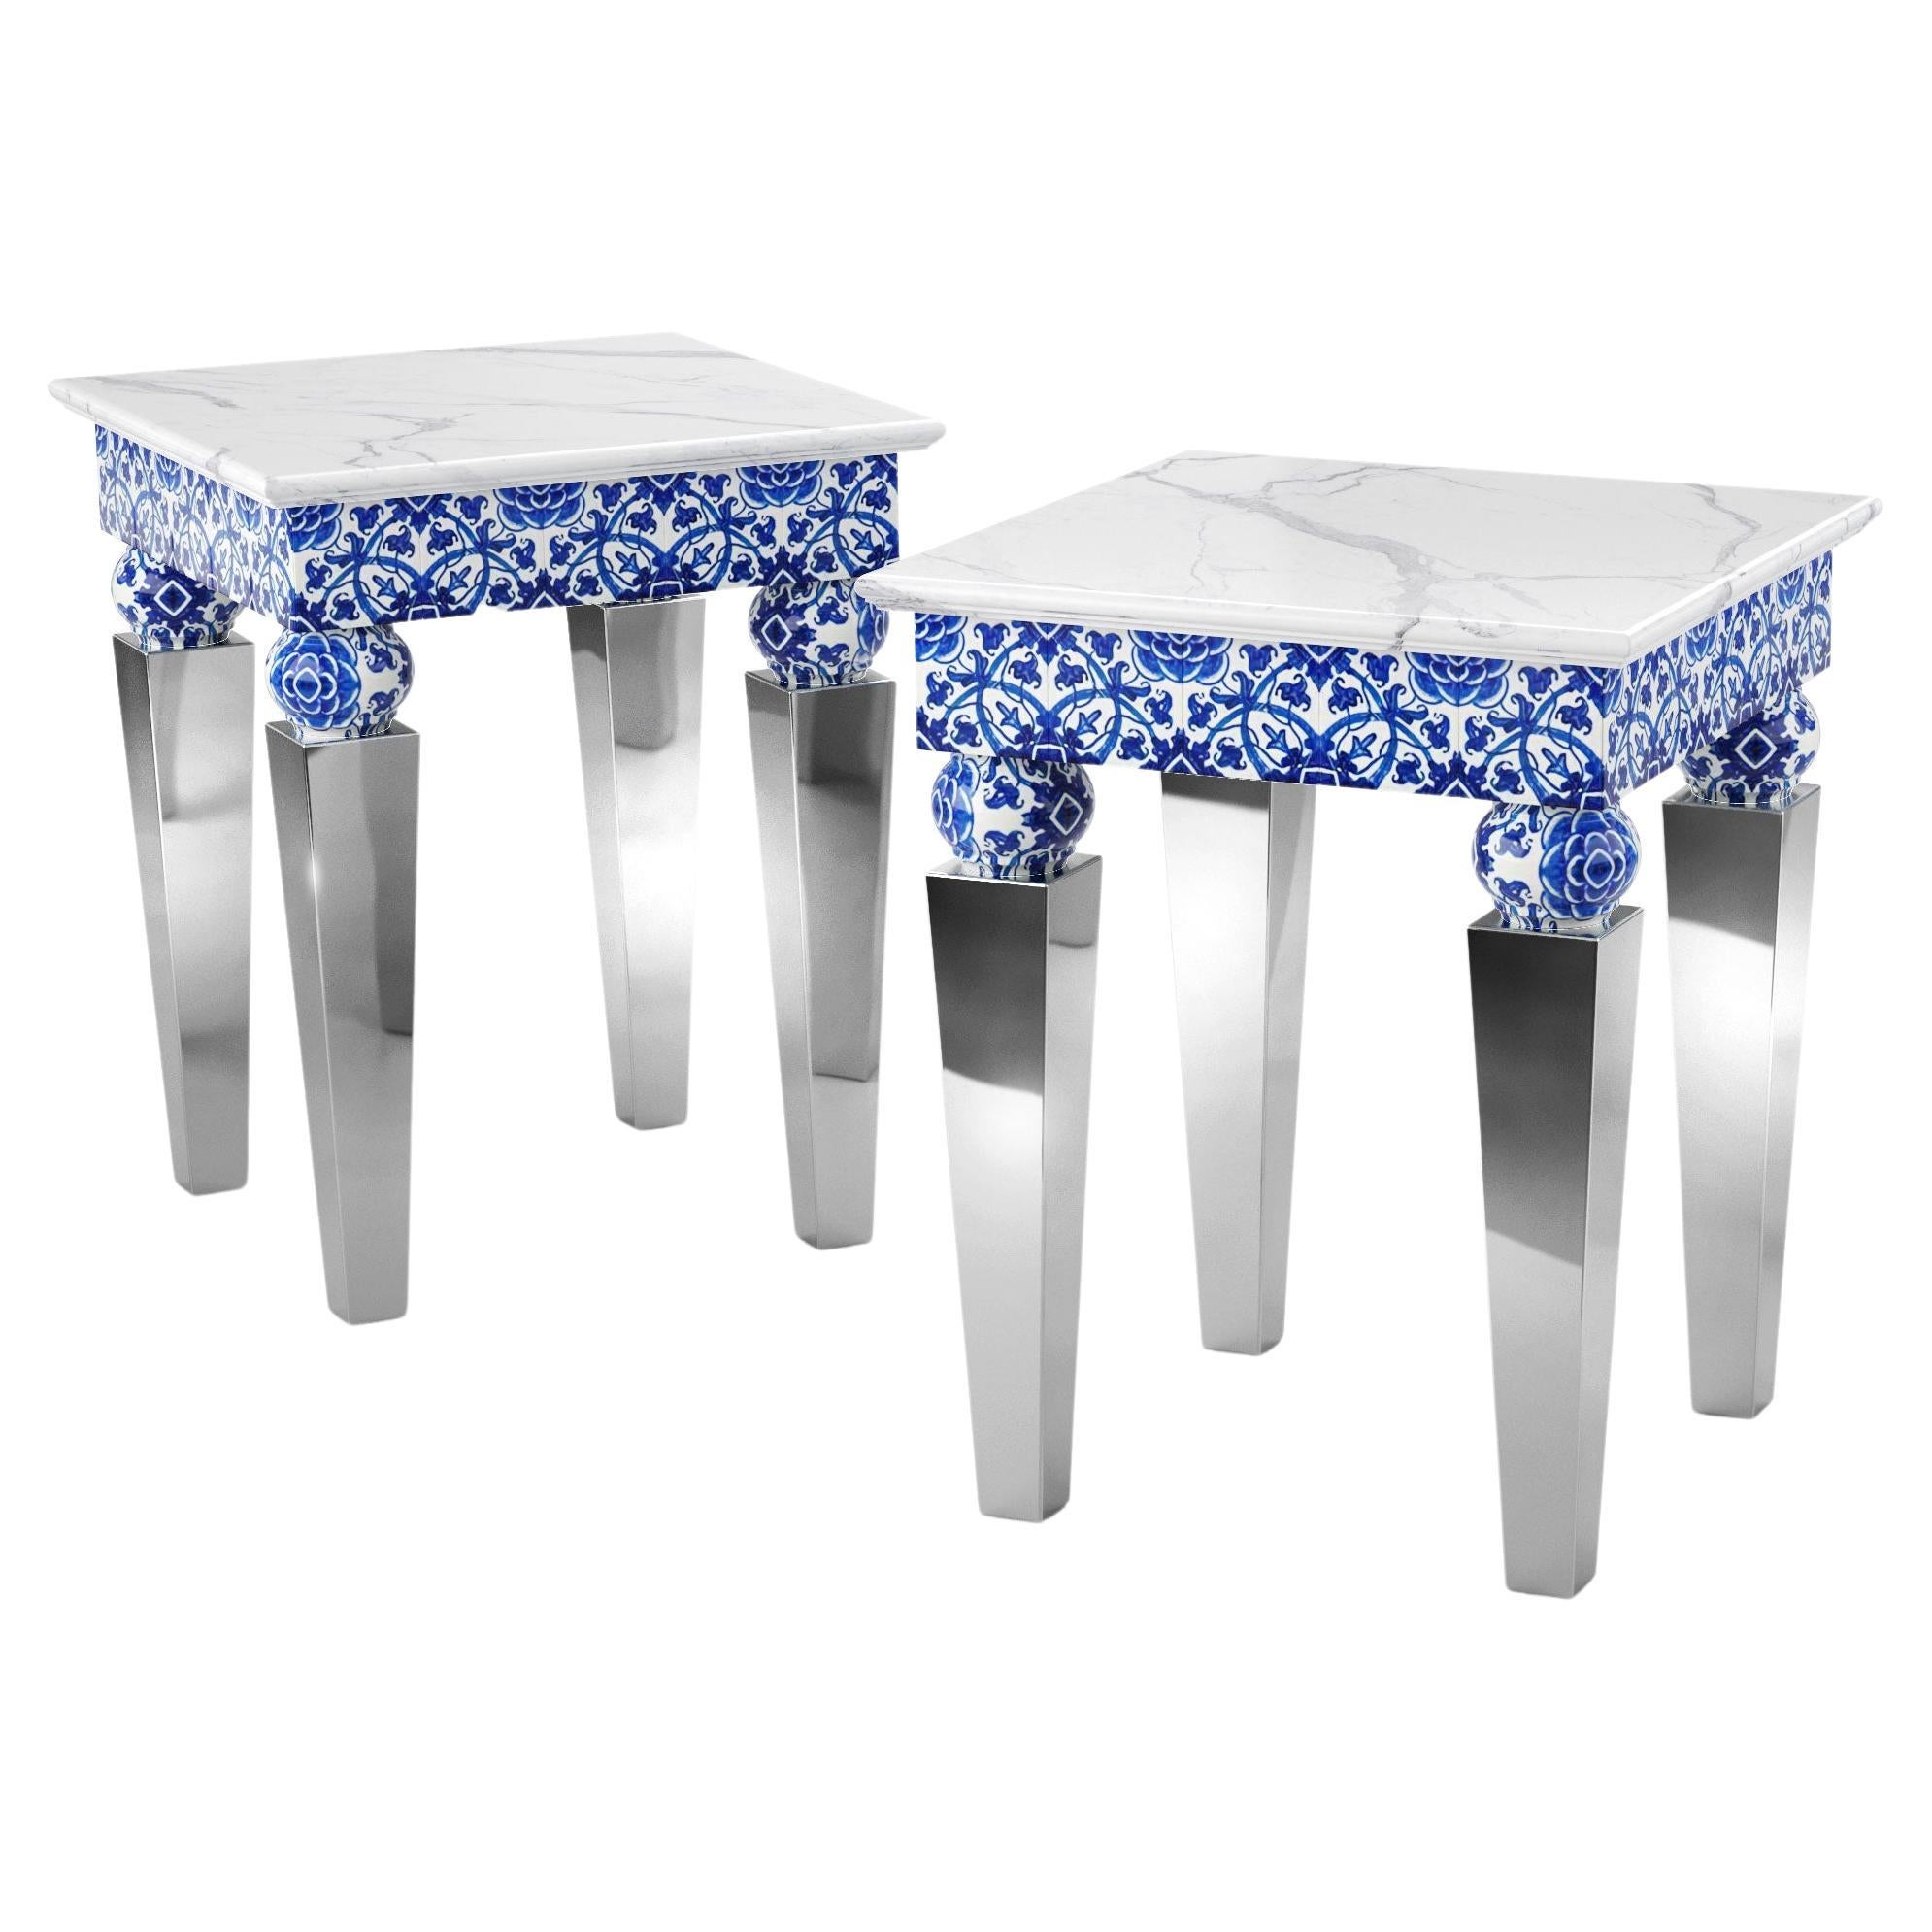 Deux tables d'appoint, marbre blanc, acier miroir, carreaux de majolique bleu, également en extérieur